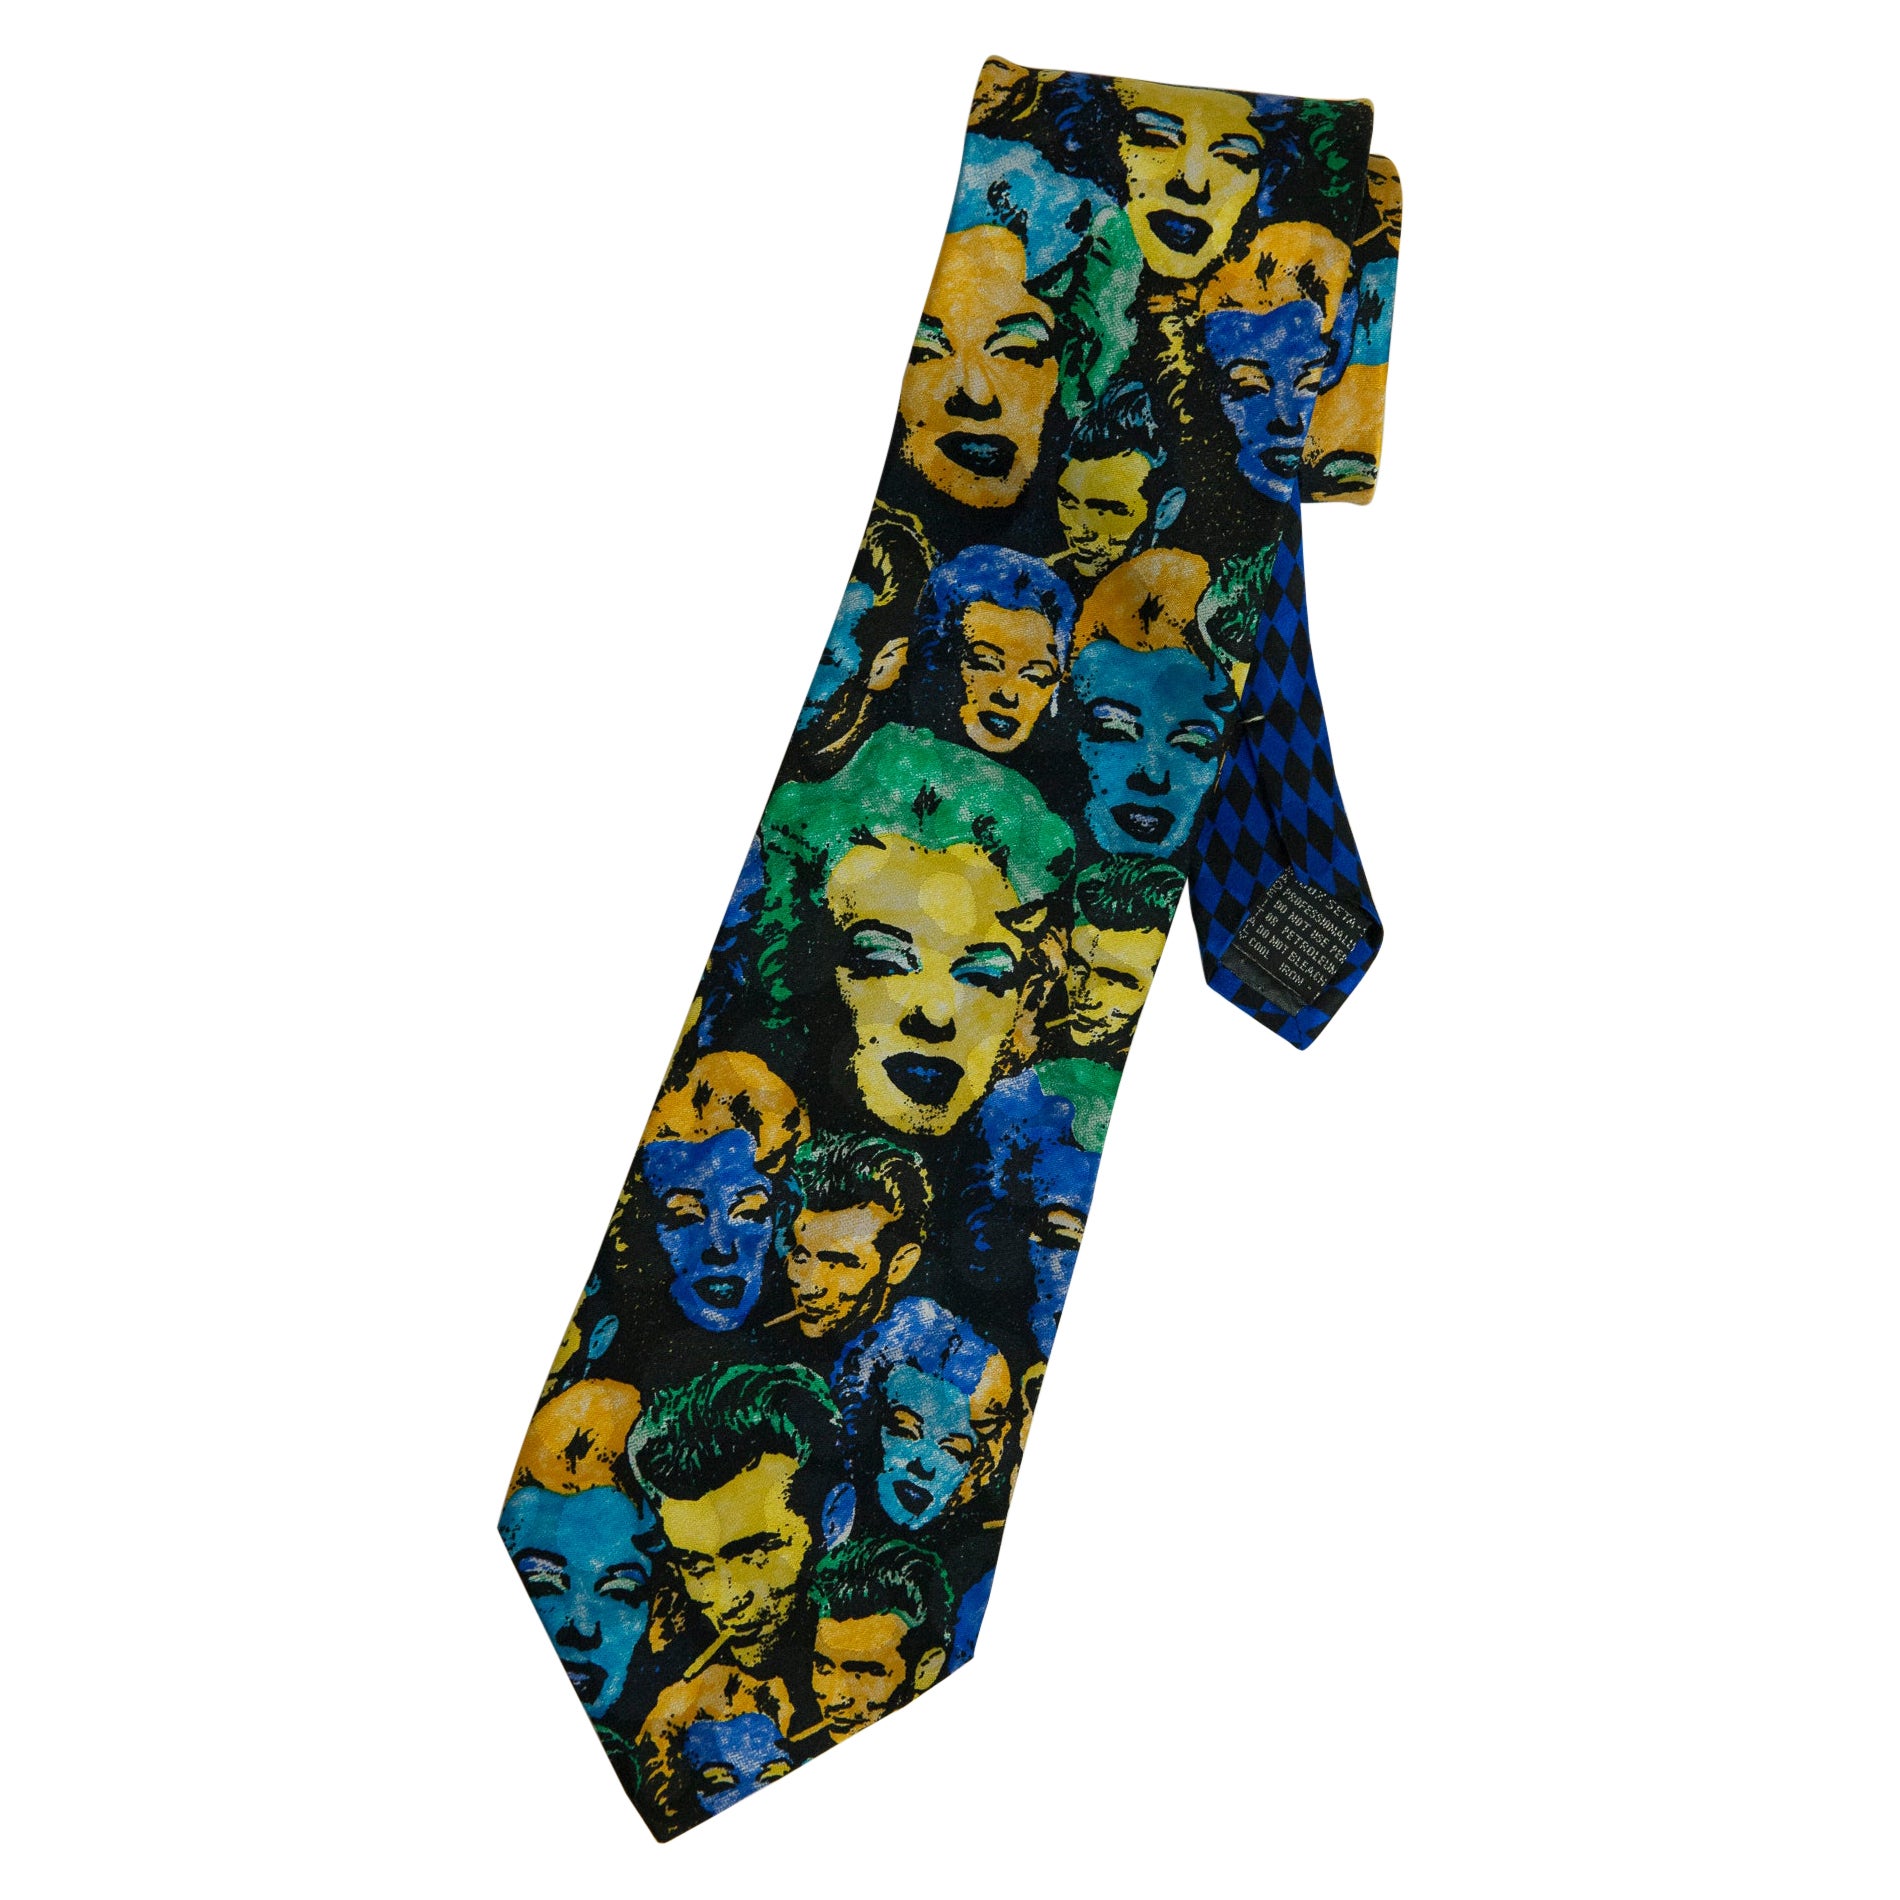 Cravate en soie imprimée Marilyn & James Dean de Gianni Versace en vente